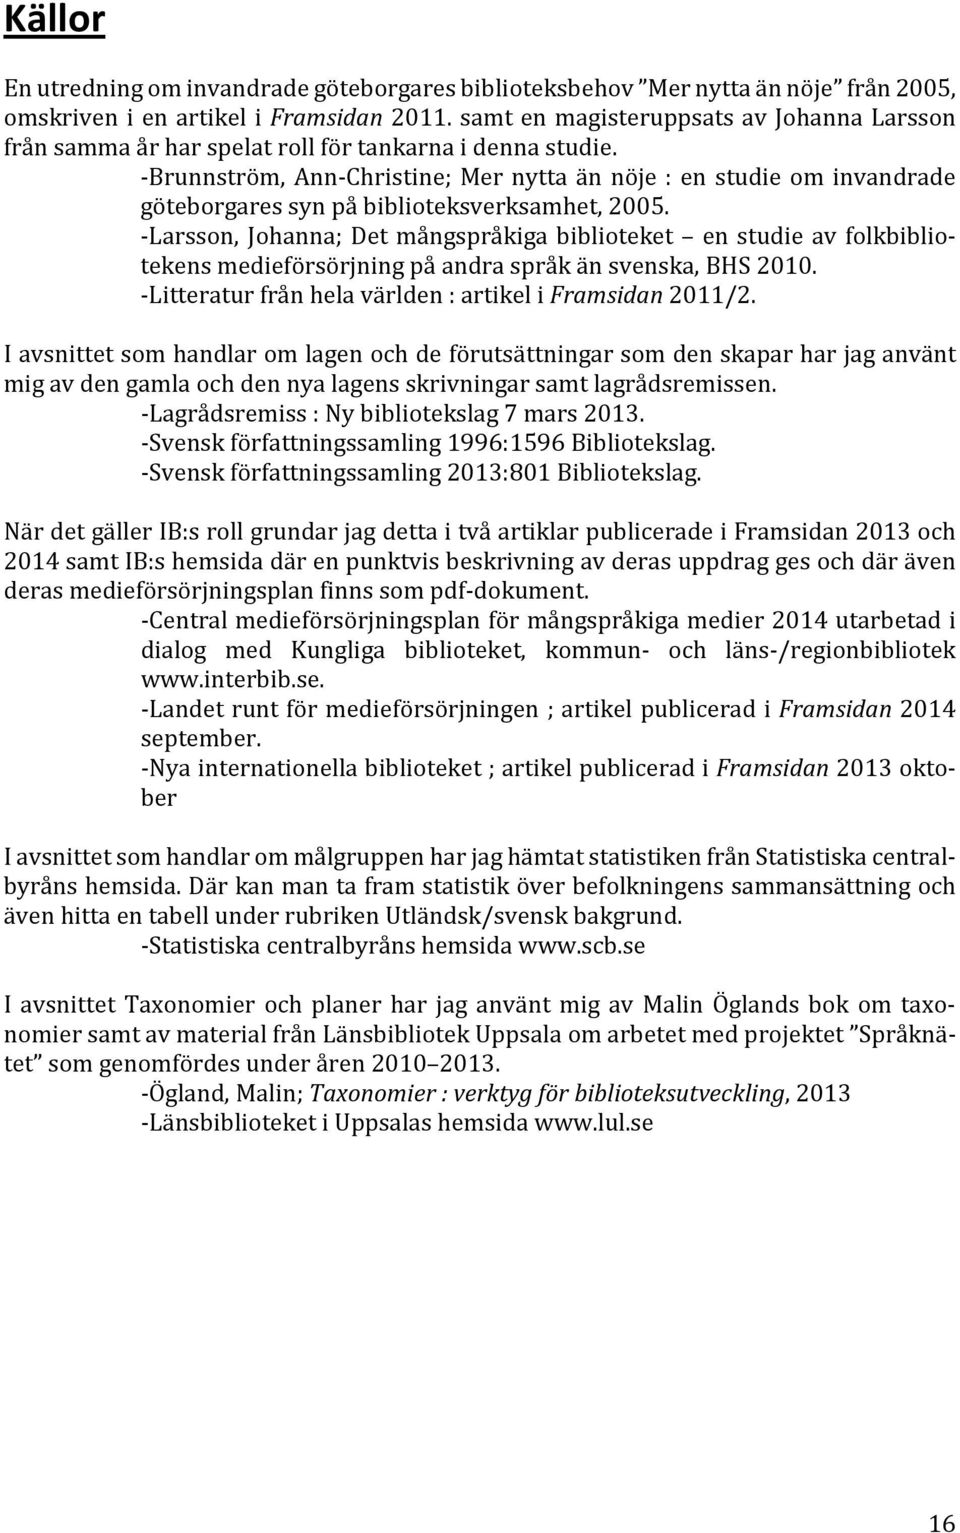 -Brunnström, Ann-Christine; Mer nytta än nöje : en studie om invandrade göteborgares syn på biblioteksverksamhet, 2005.